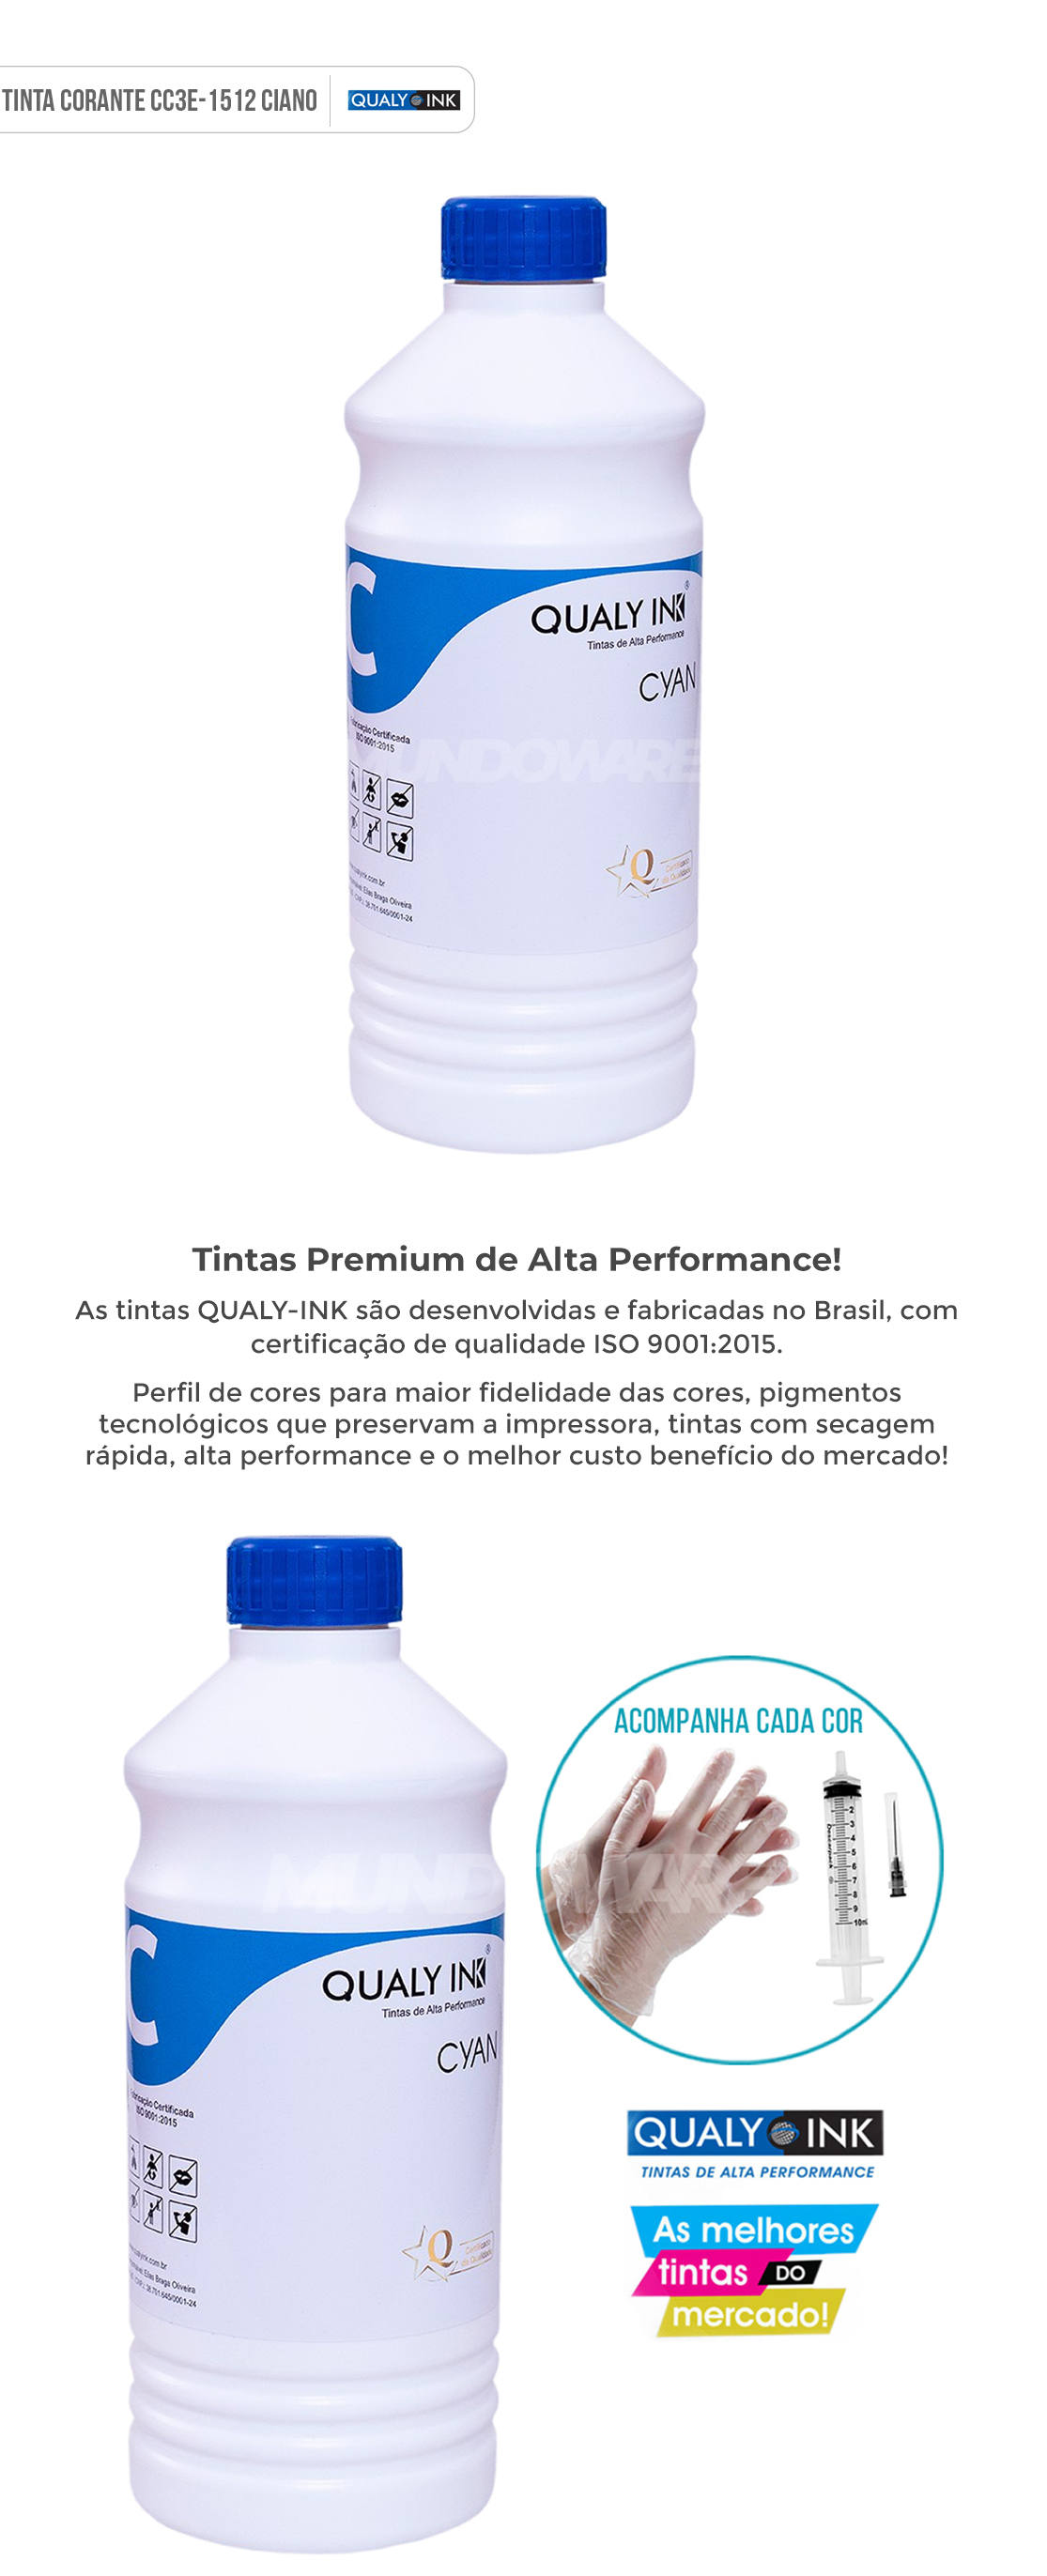 Refil de Tinta Qualy-Ink Ciano Corante para Epson série 544 504 impressoras L3108 L3110 L3111 L3118 L3119 L3150 L3158 L4150 L4158 L4160 L4168 L5190 L6160 L6161 L6168 L6170 L6171 L6178 L6190 L6191 L6198